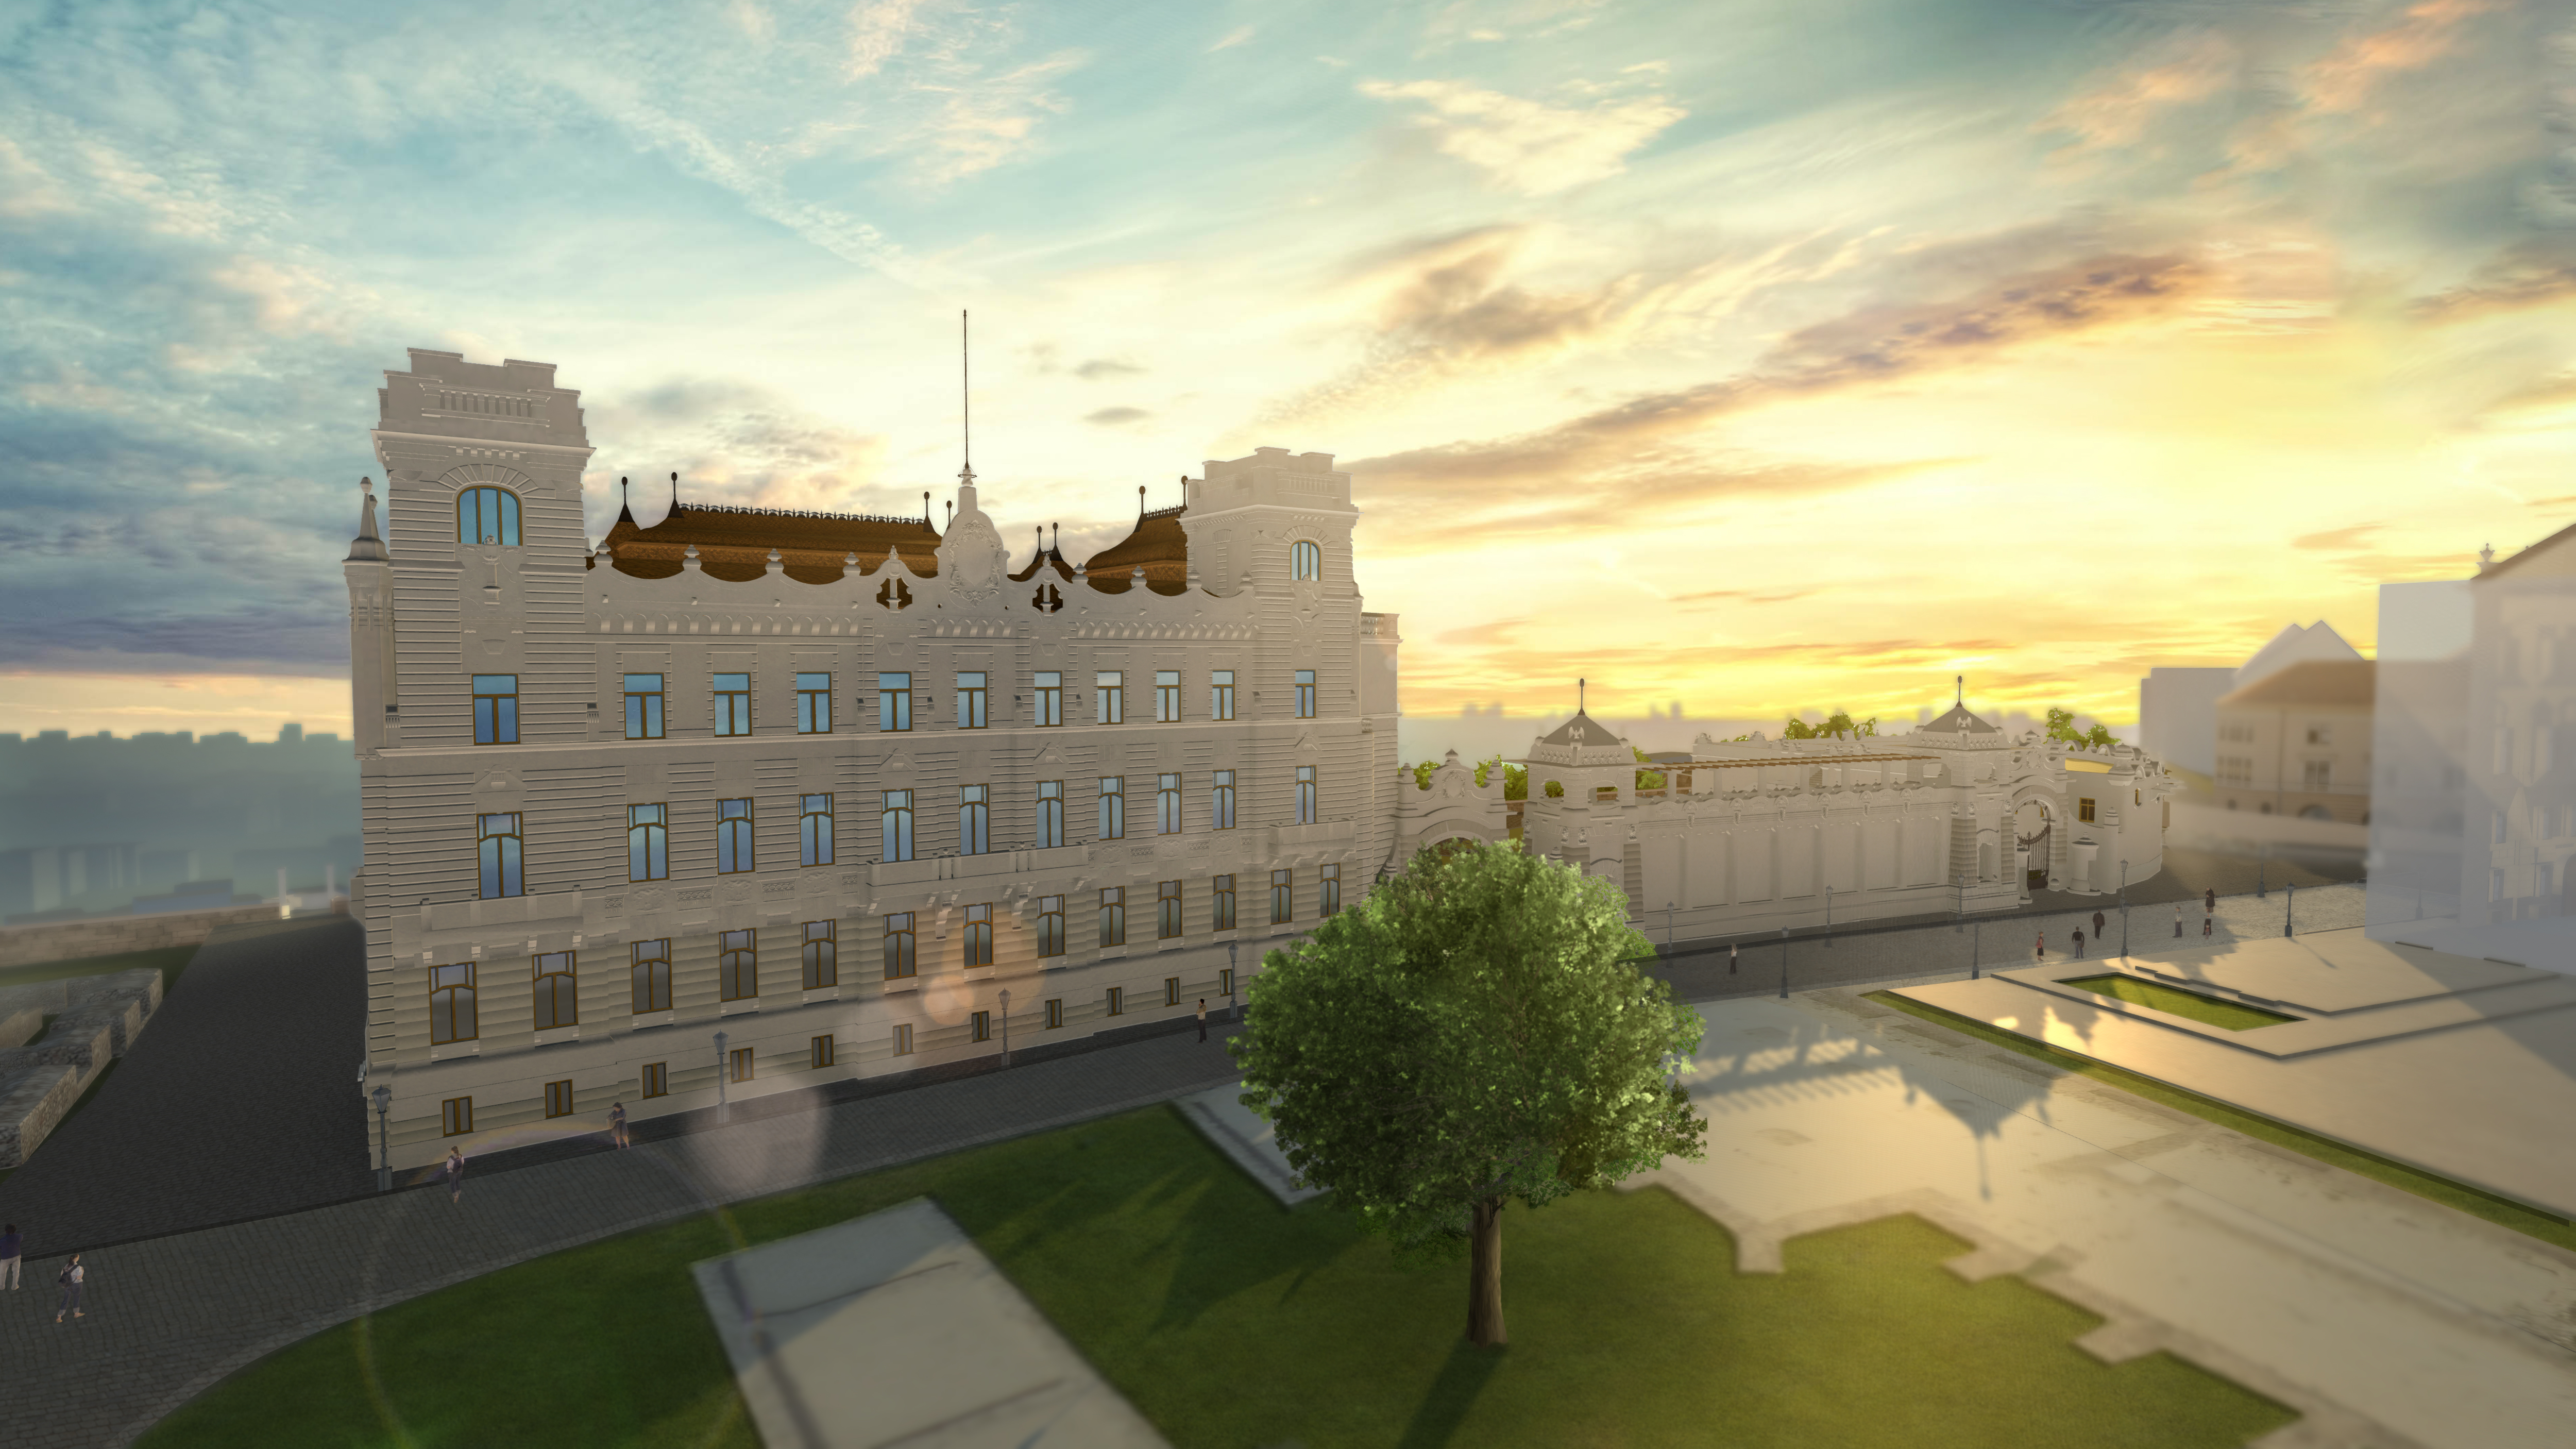 Újjáépítik a József főhercegi palotát a budai Várban – mutatjuk a látványterveket